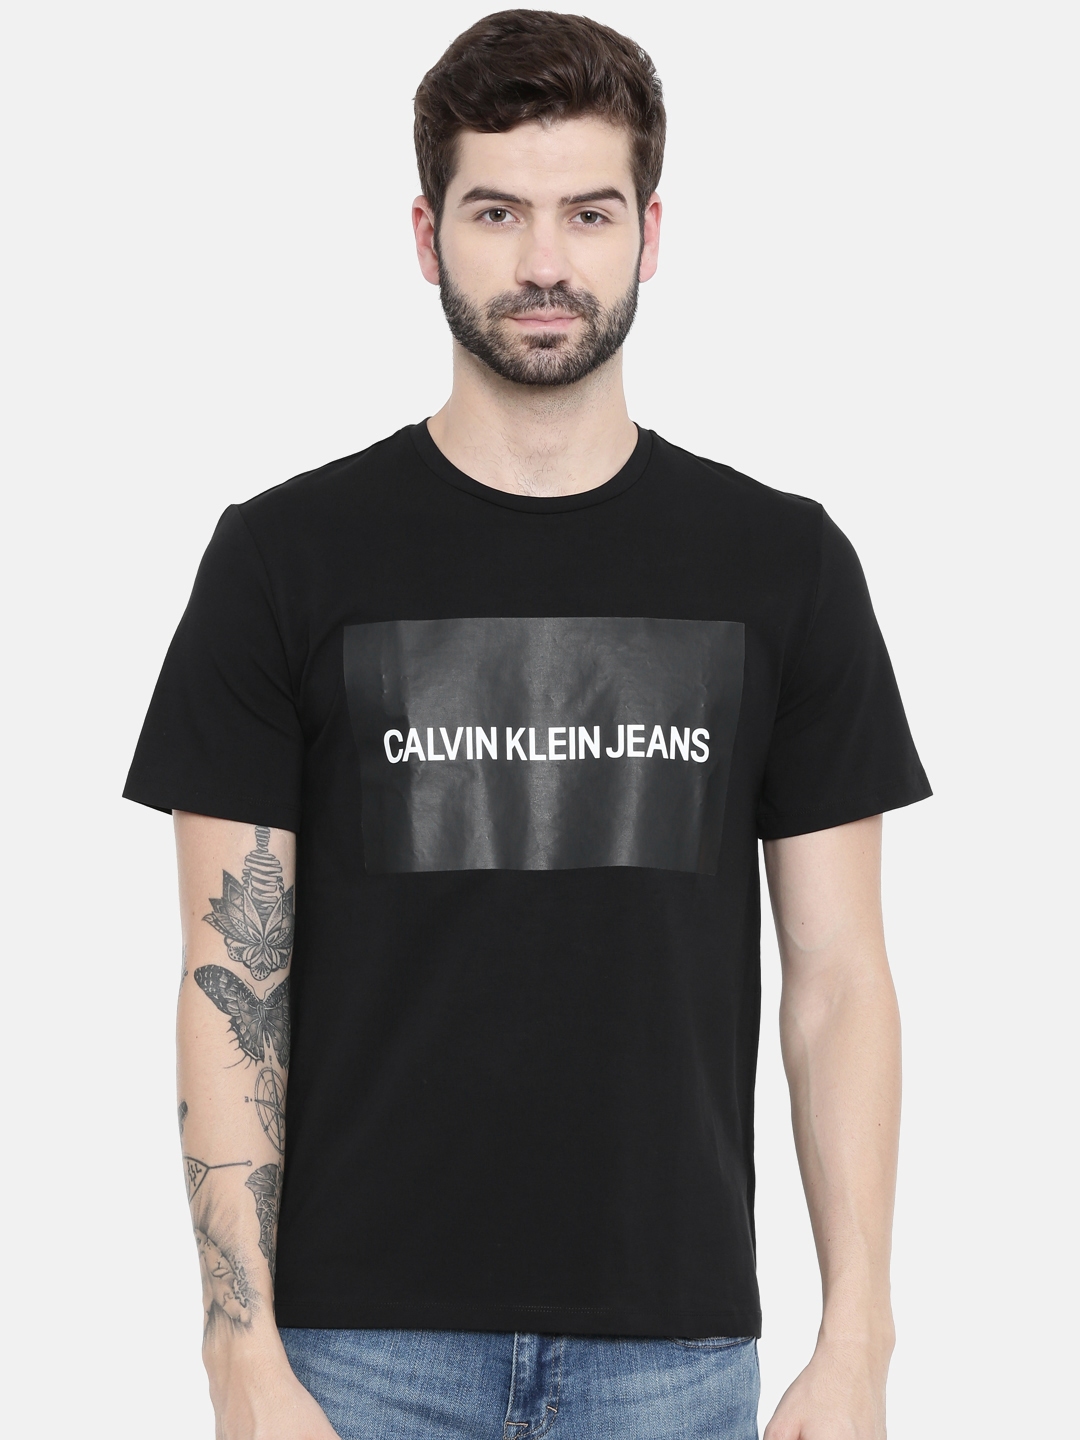 calvin klein black t shirt mens